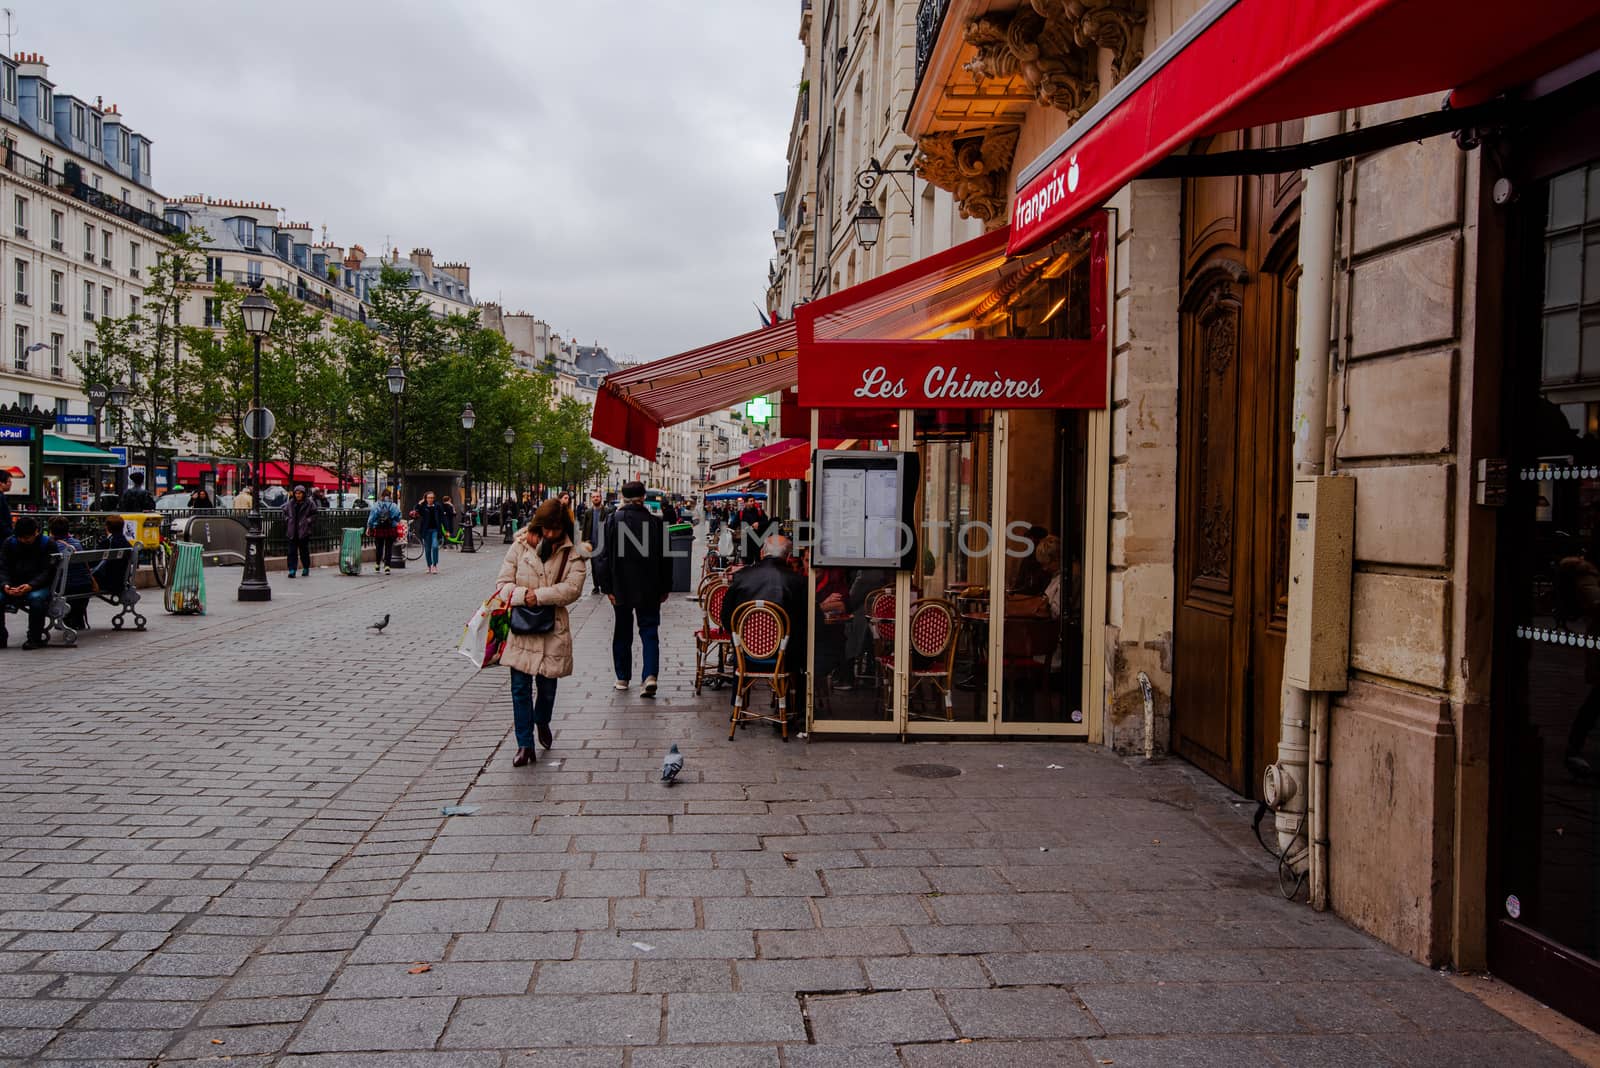 Pedestrians on Rue St Antoine by jfbenning